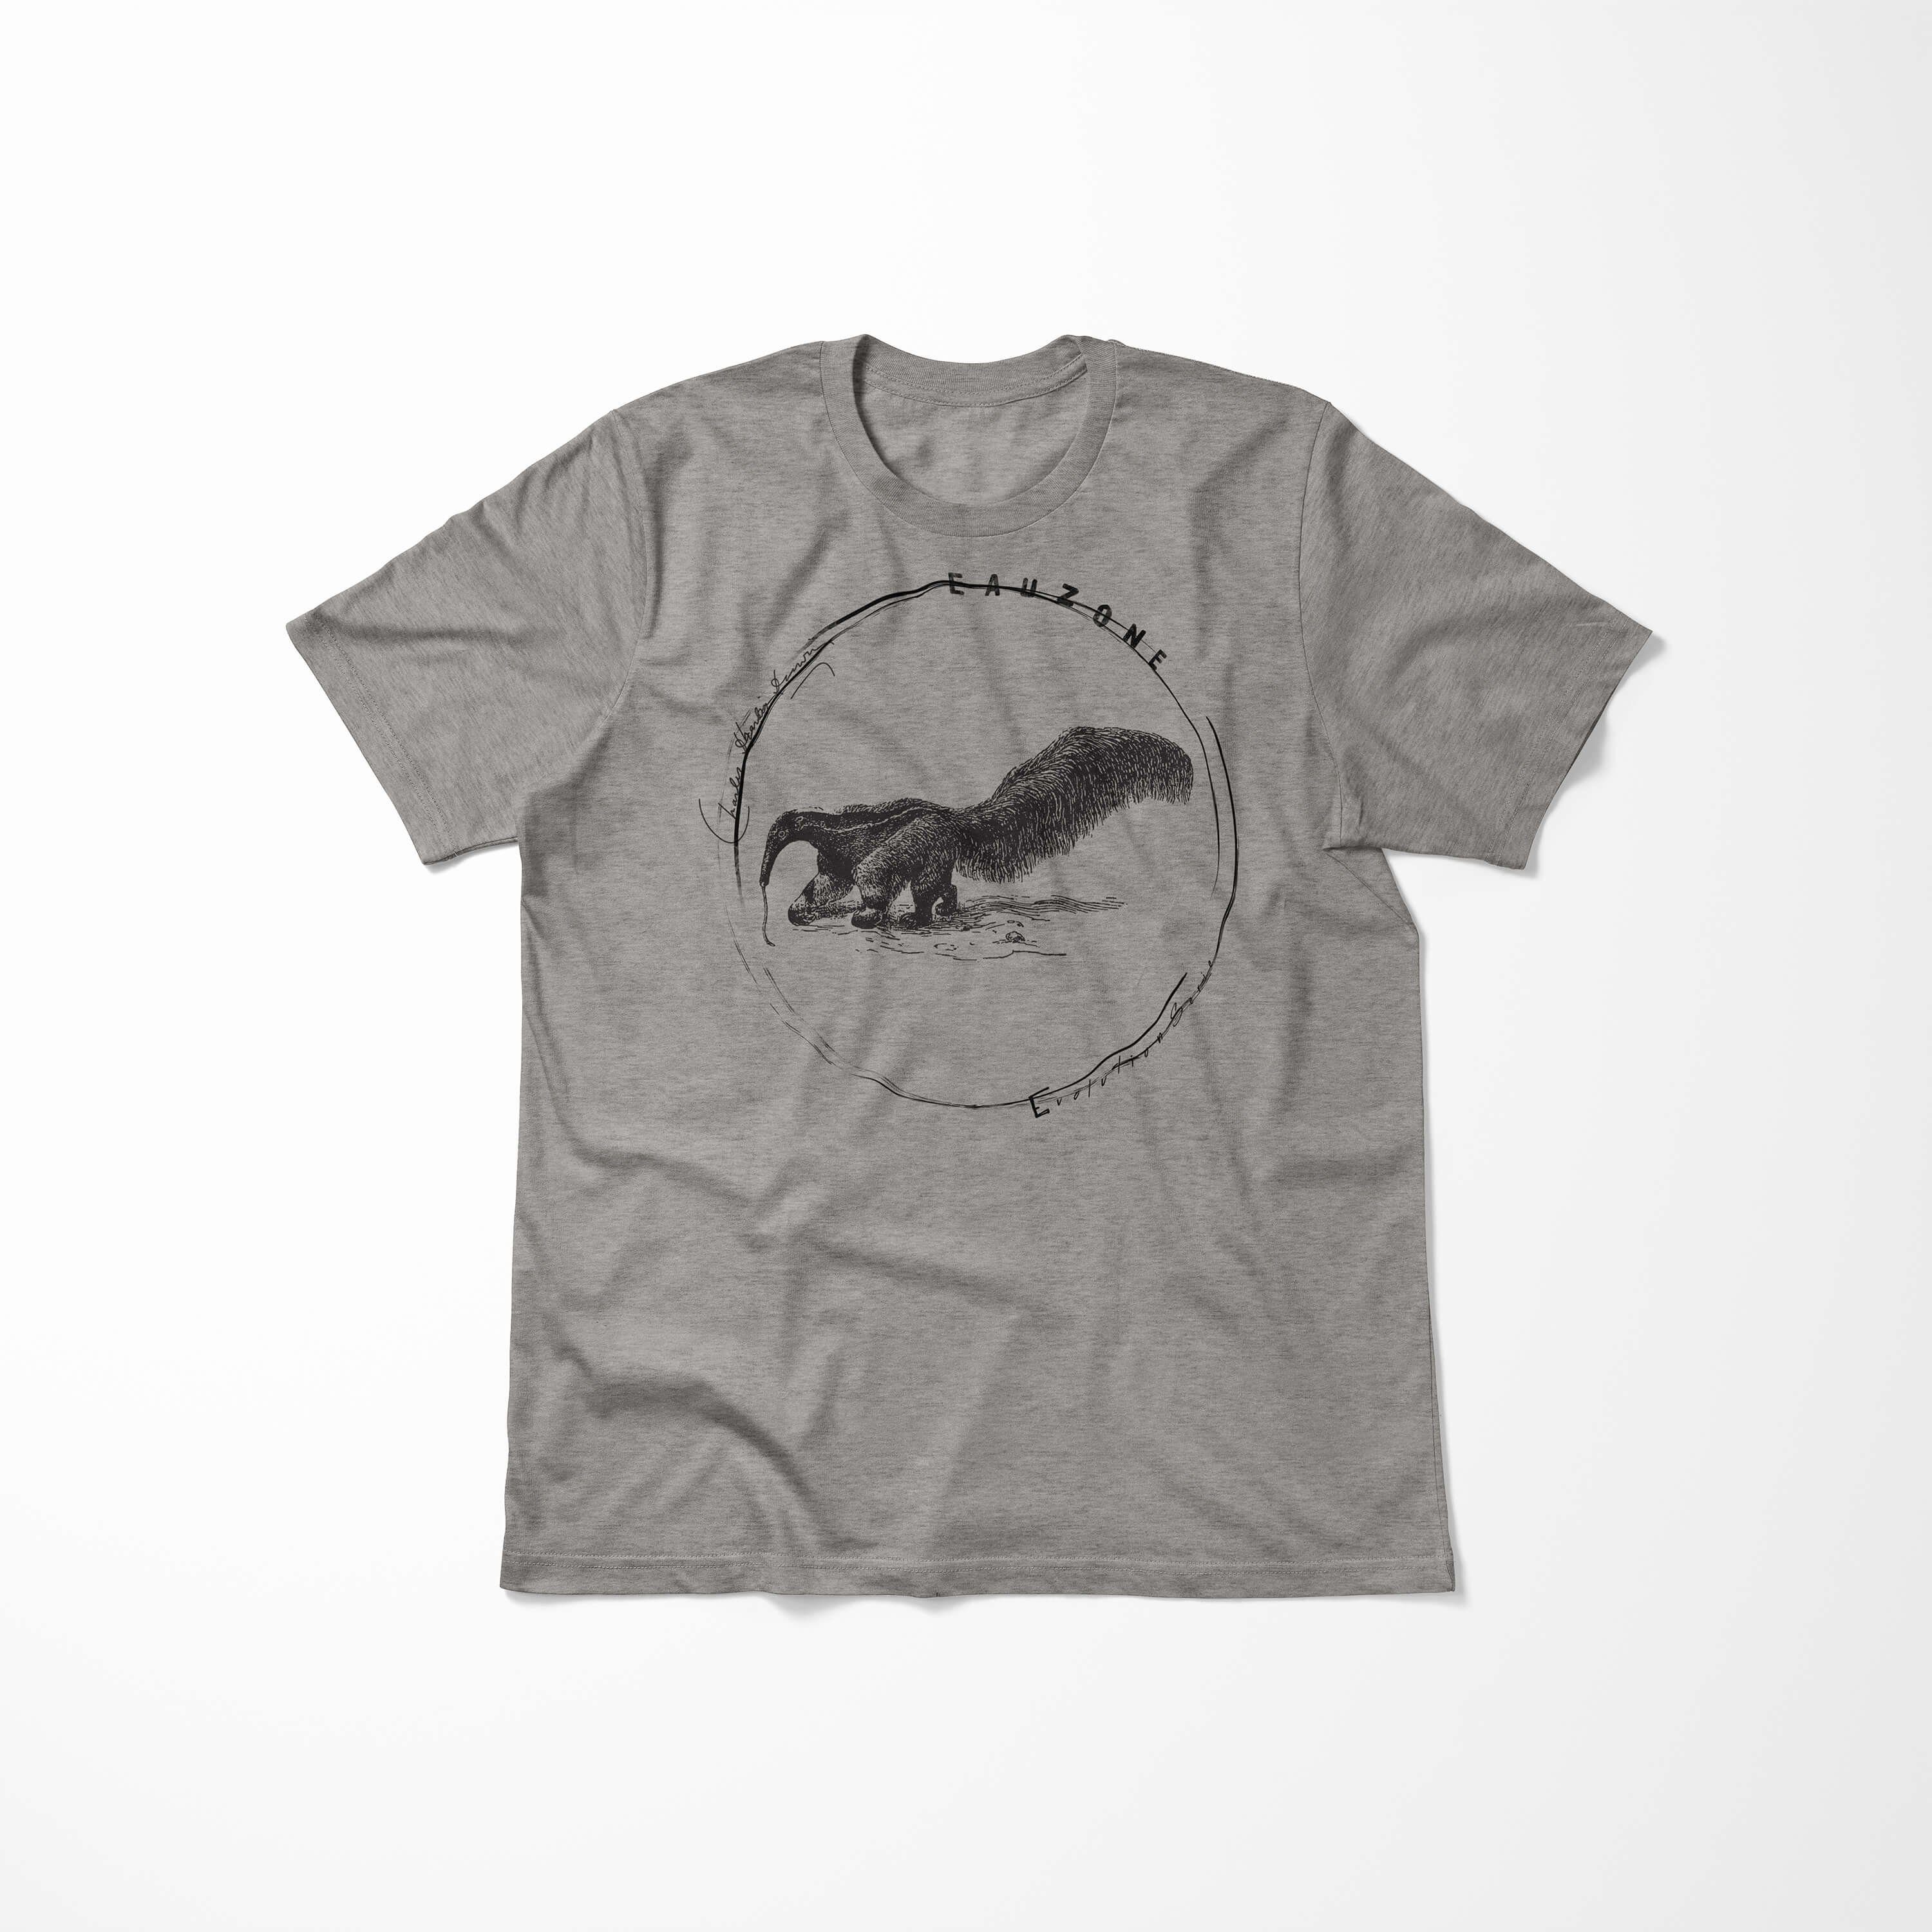 Herren T-Shirt Art Ameisenfresser T-Shirt Sinus Evolution Ash